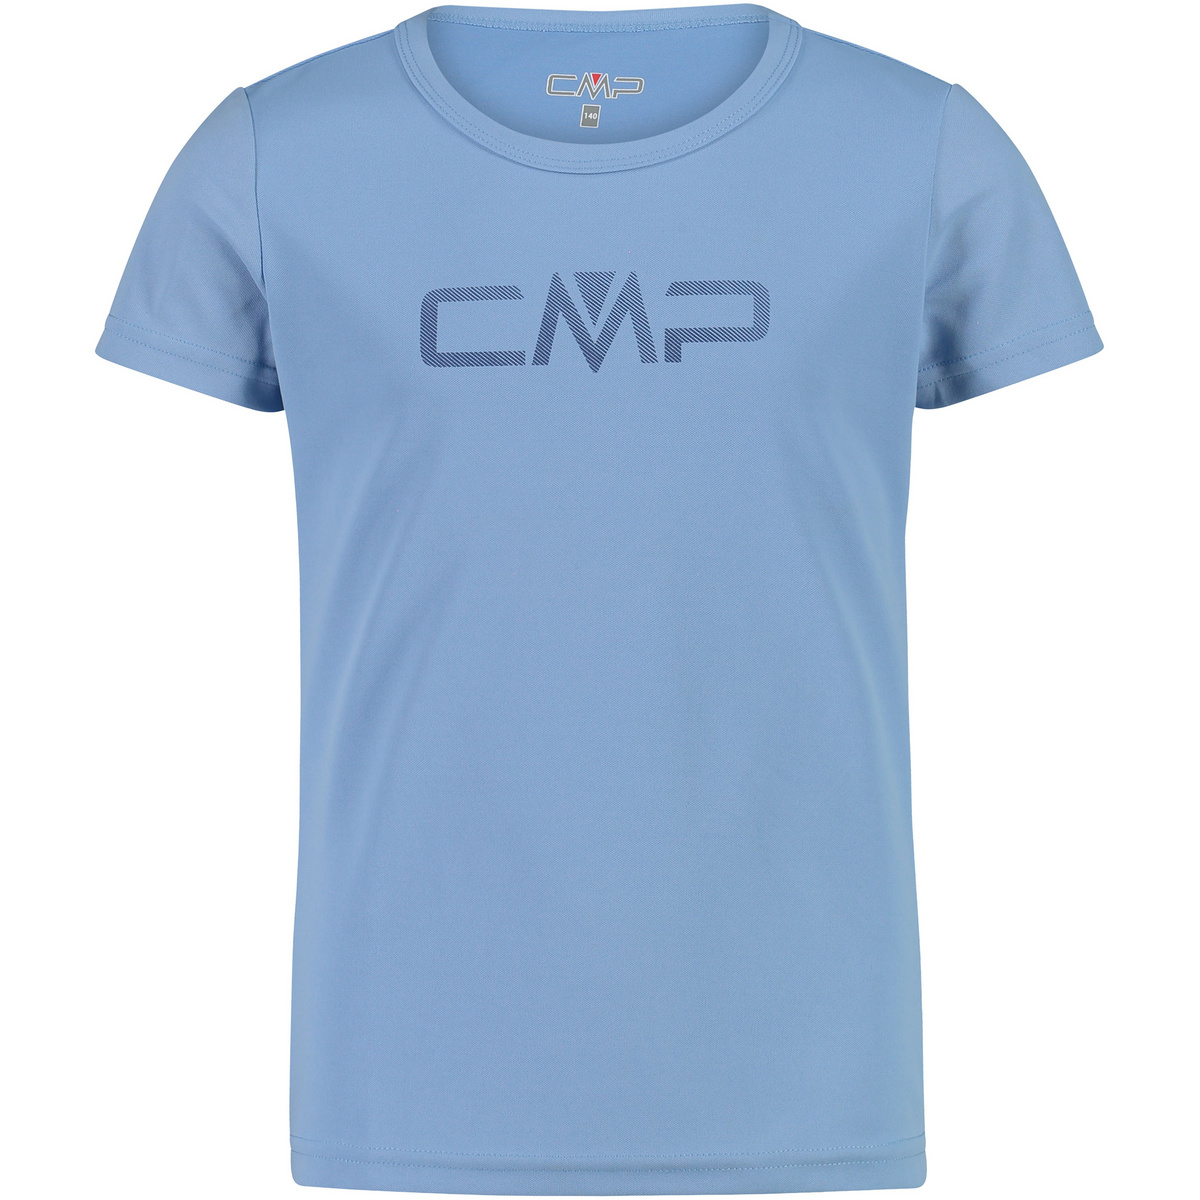 CMP Kinder Print T-Shirt von CMP